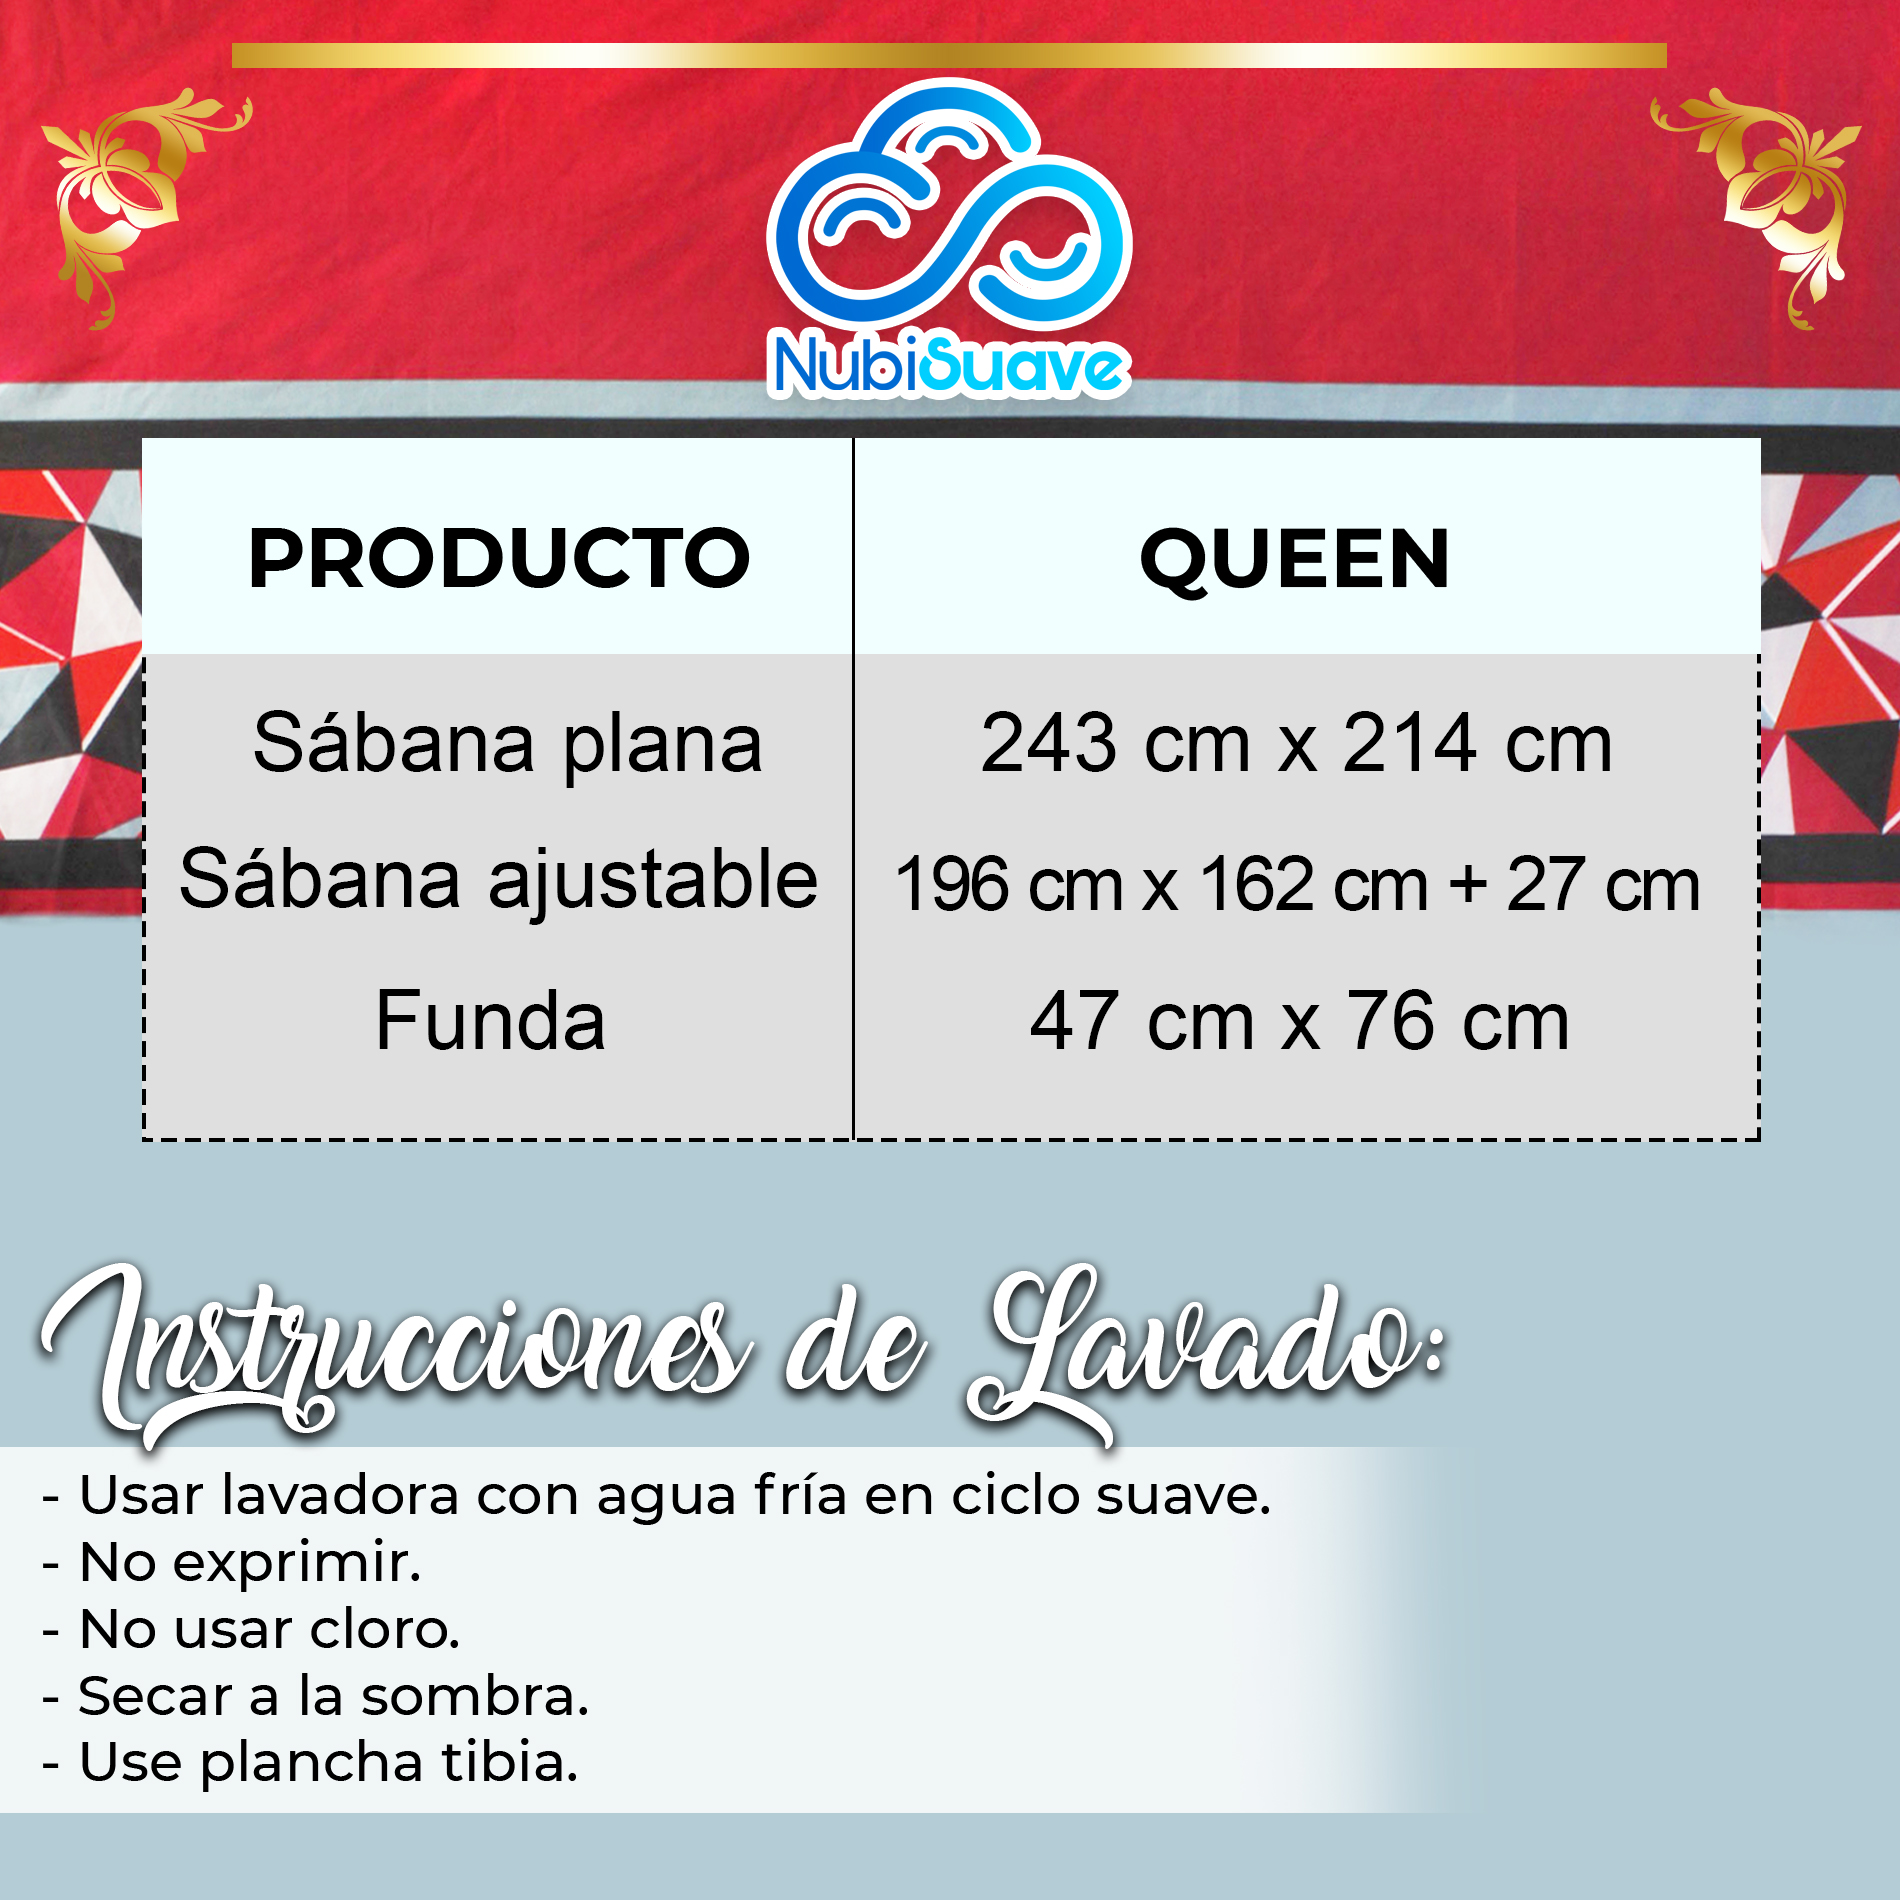 Juego De Sabanas Queen Size Microfibra Nubisuave Rojo Azul Grisaceo